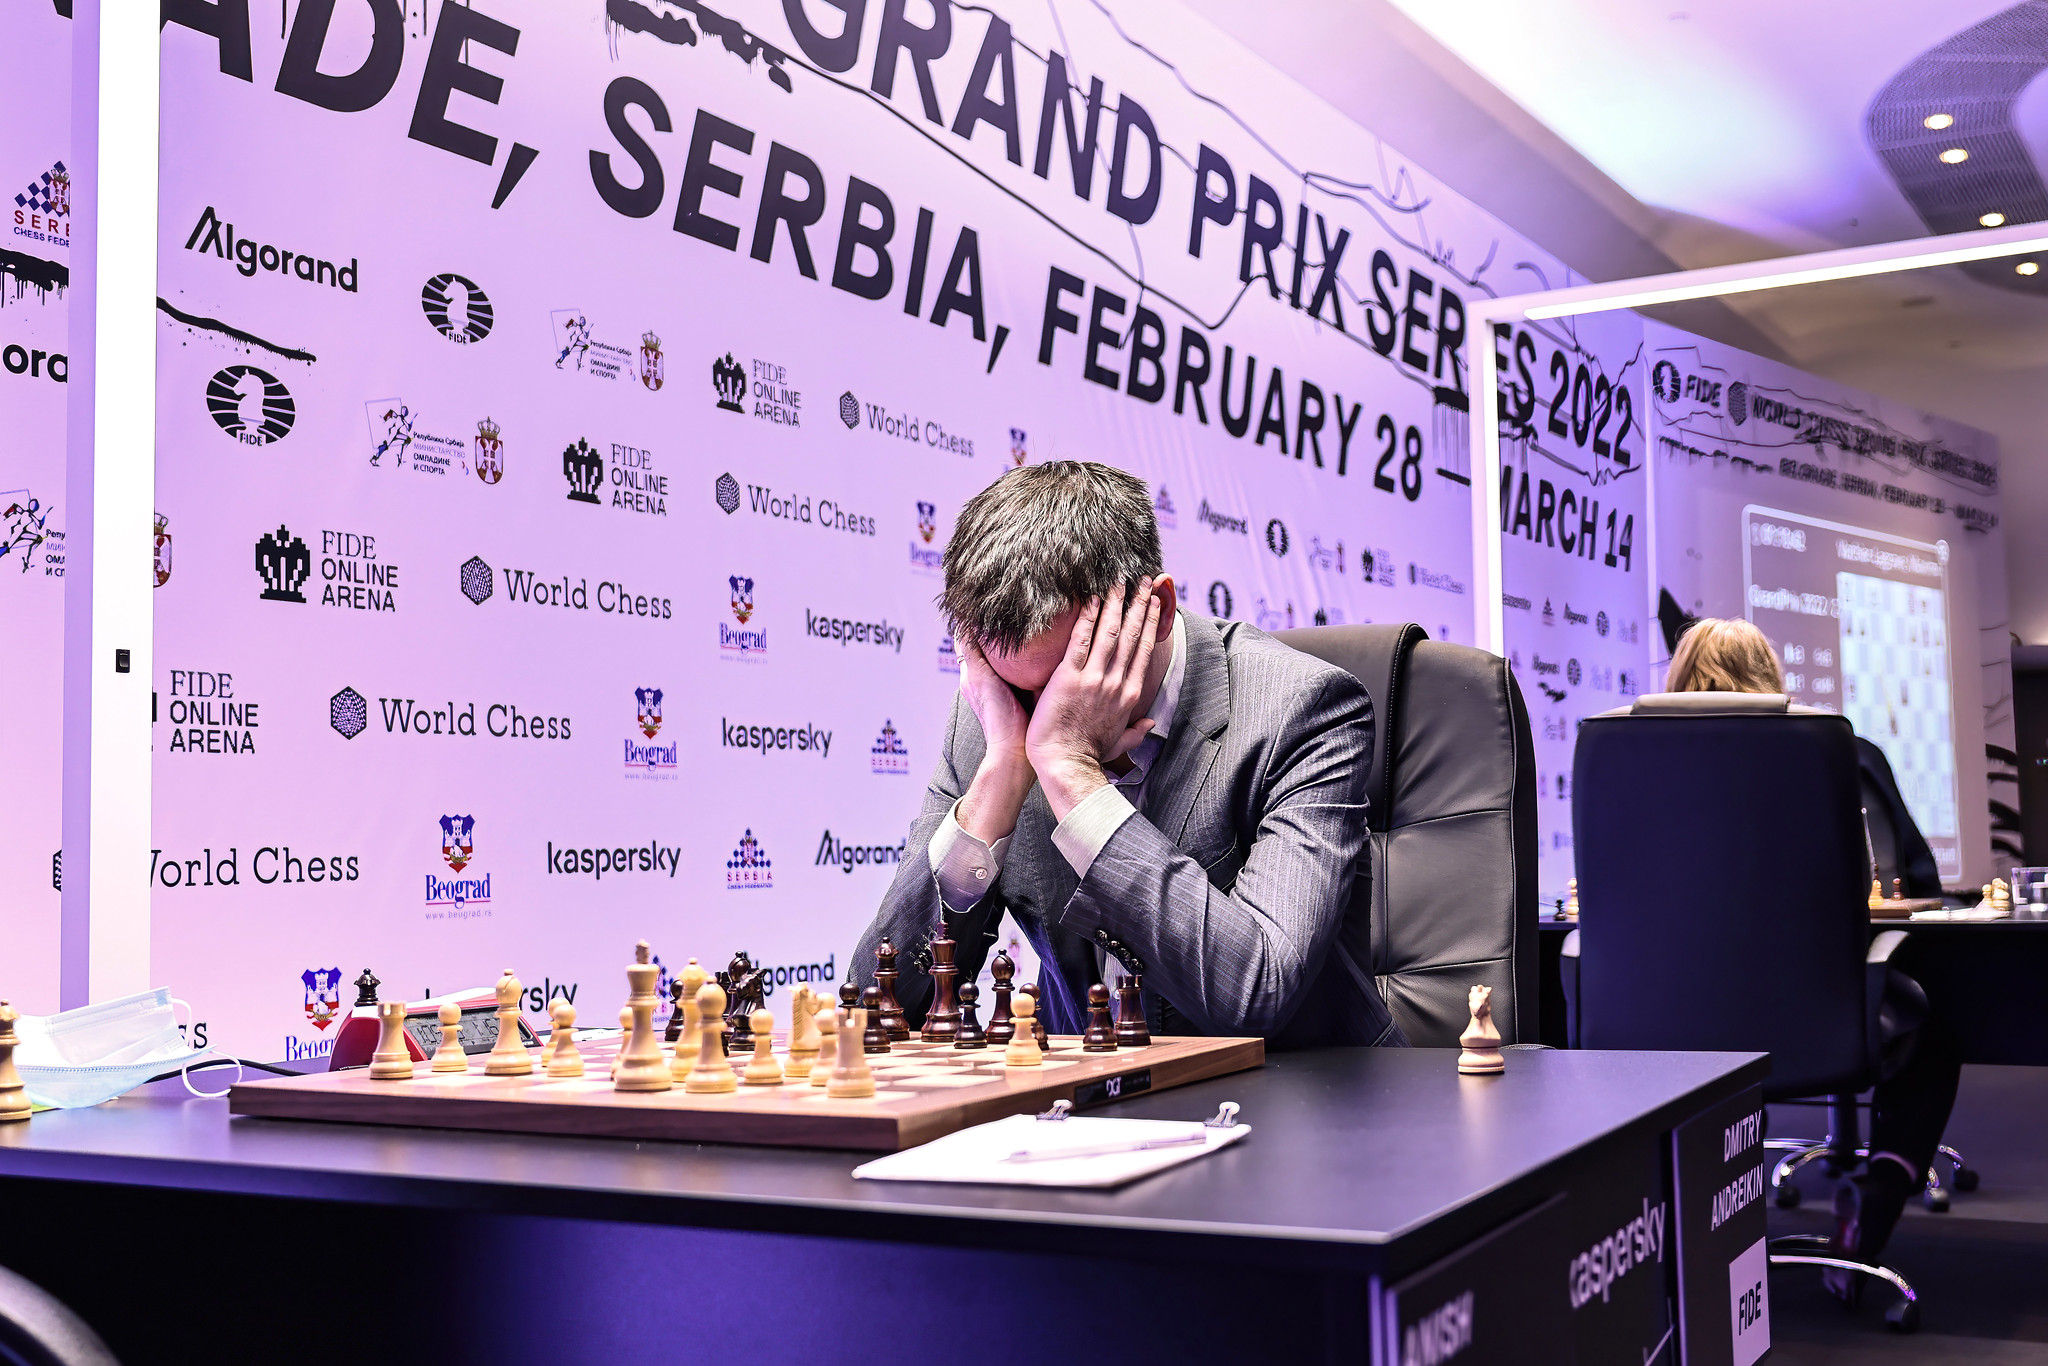 2022 FIDE Grand Prix Belgrade Semifinals Day 1: Rapport Wins! 